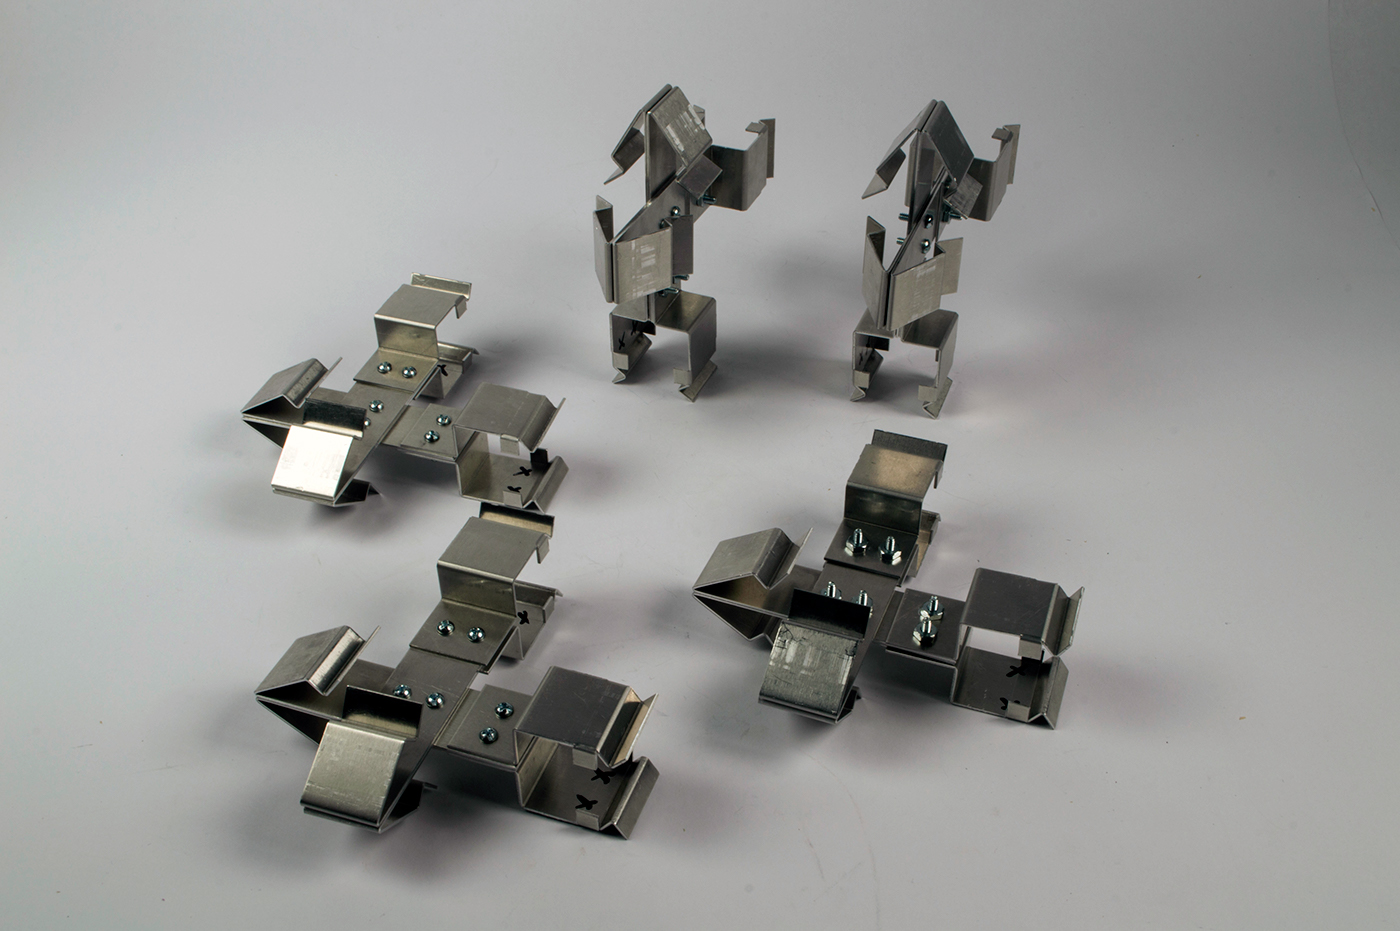 modular sheet metal risd industrial design  sculpture